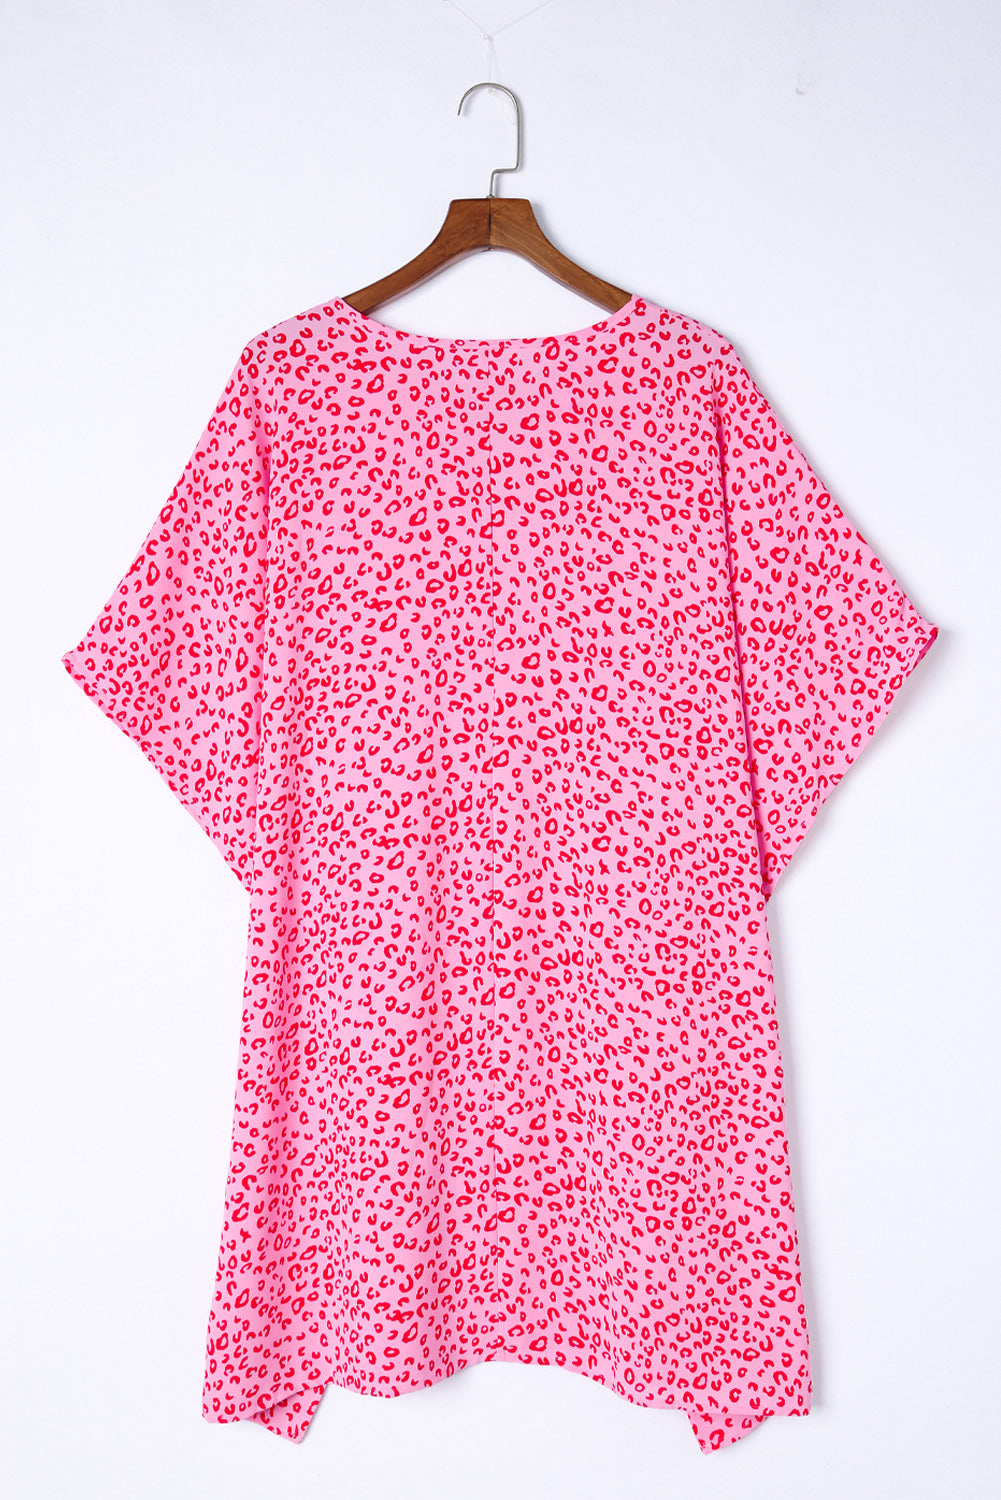 Khaki Animal Print Half Sleeve Shift Dress